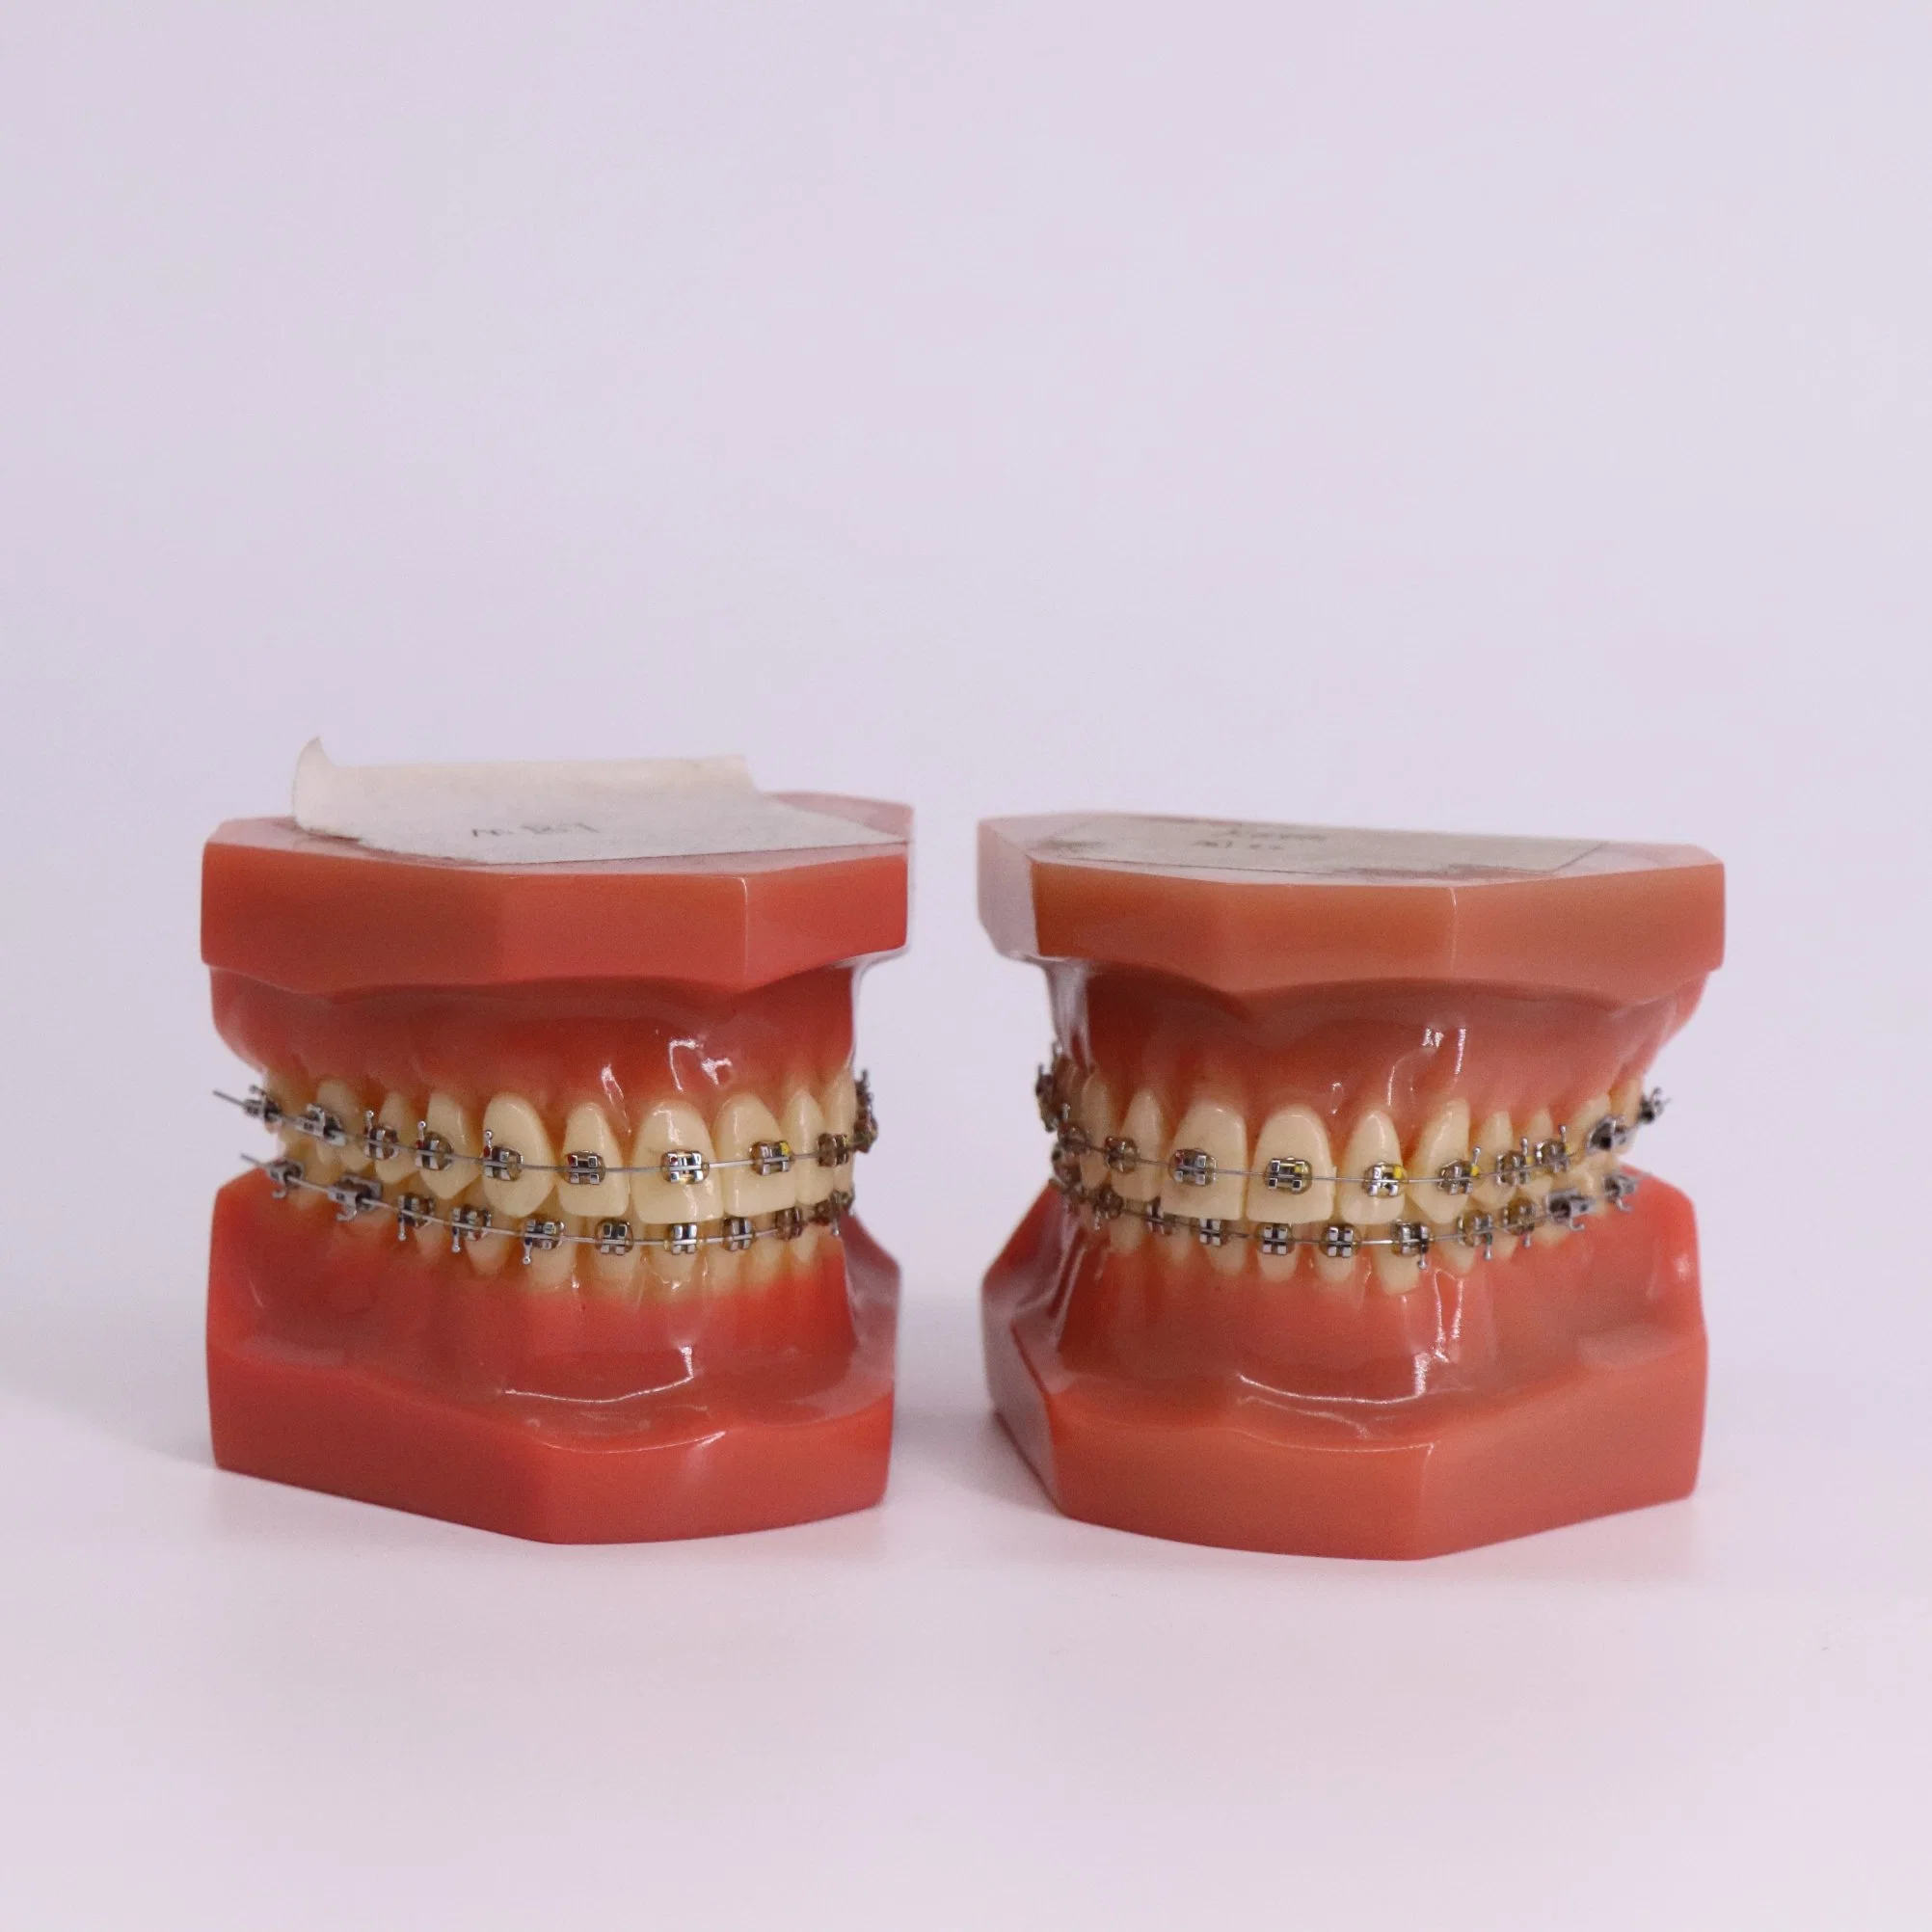 Estudio de la enseñanza de la formación práctica de la anatomía dental dientes modelo de plástico